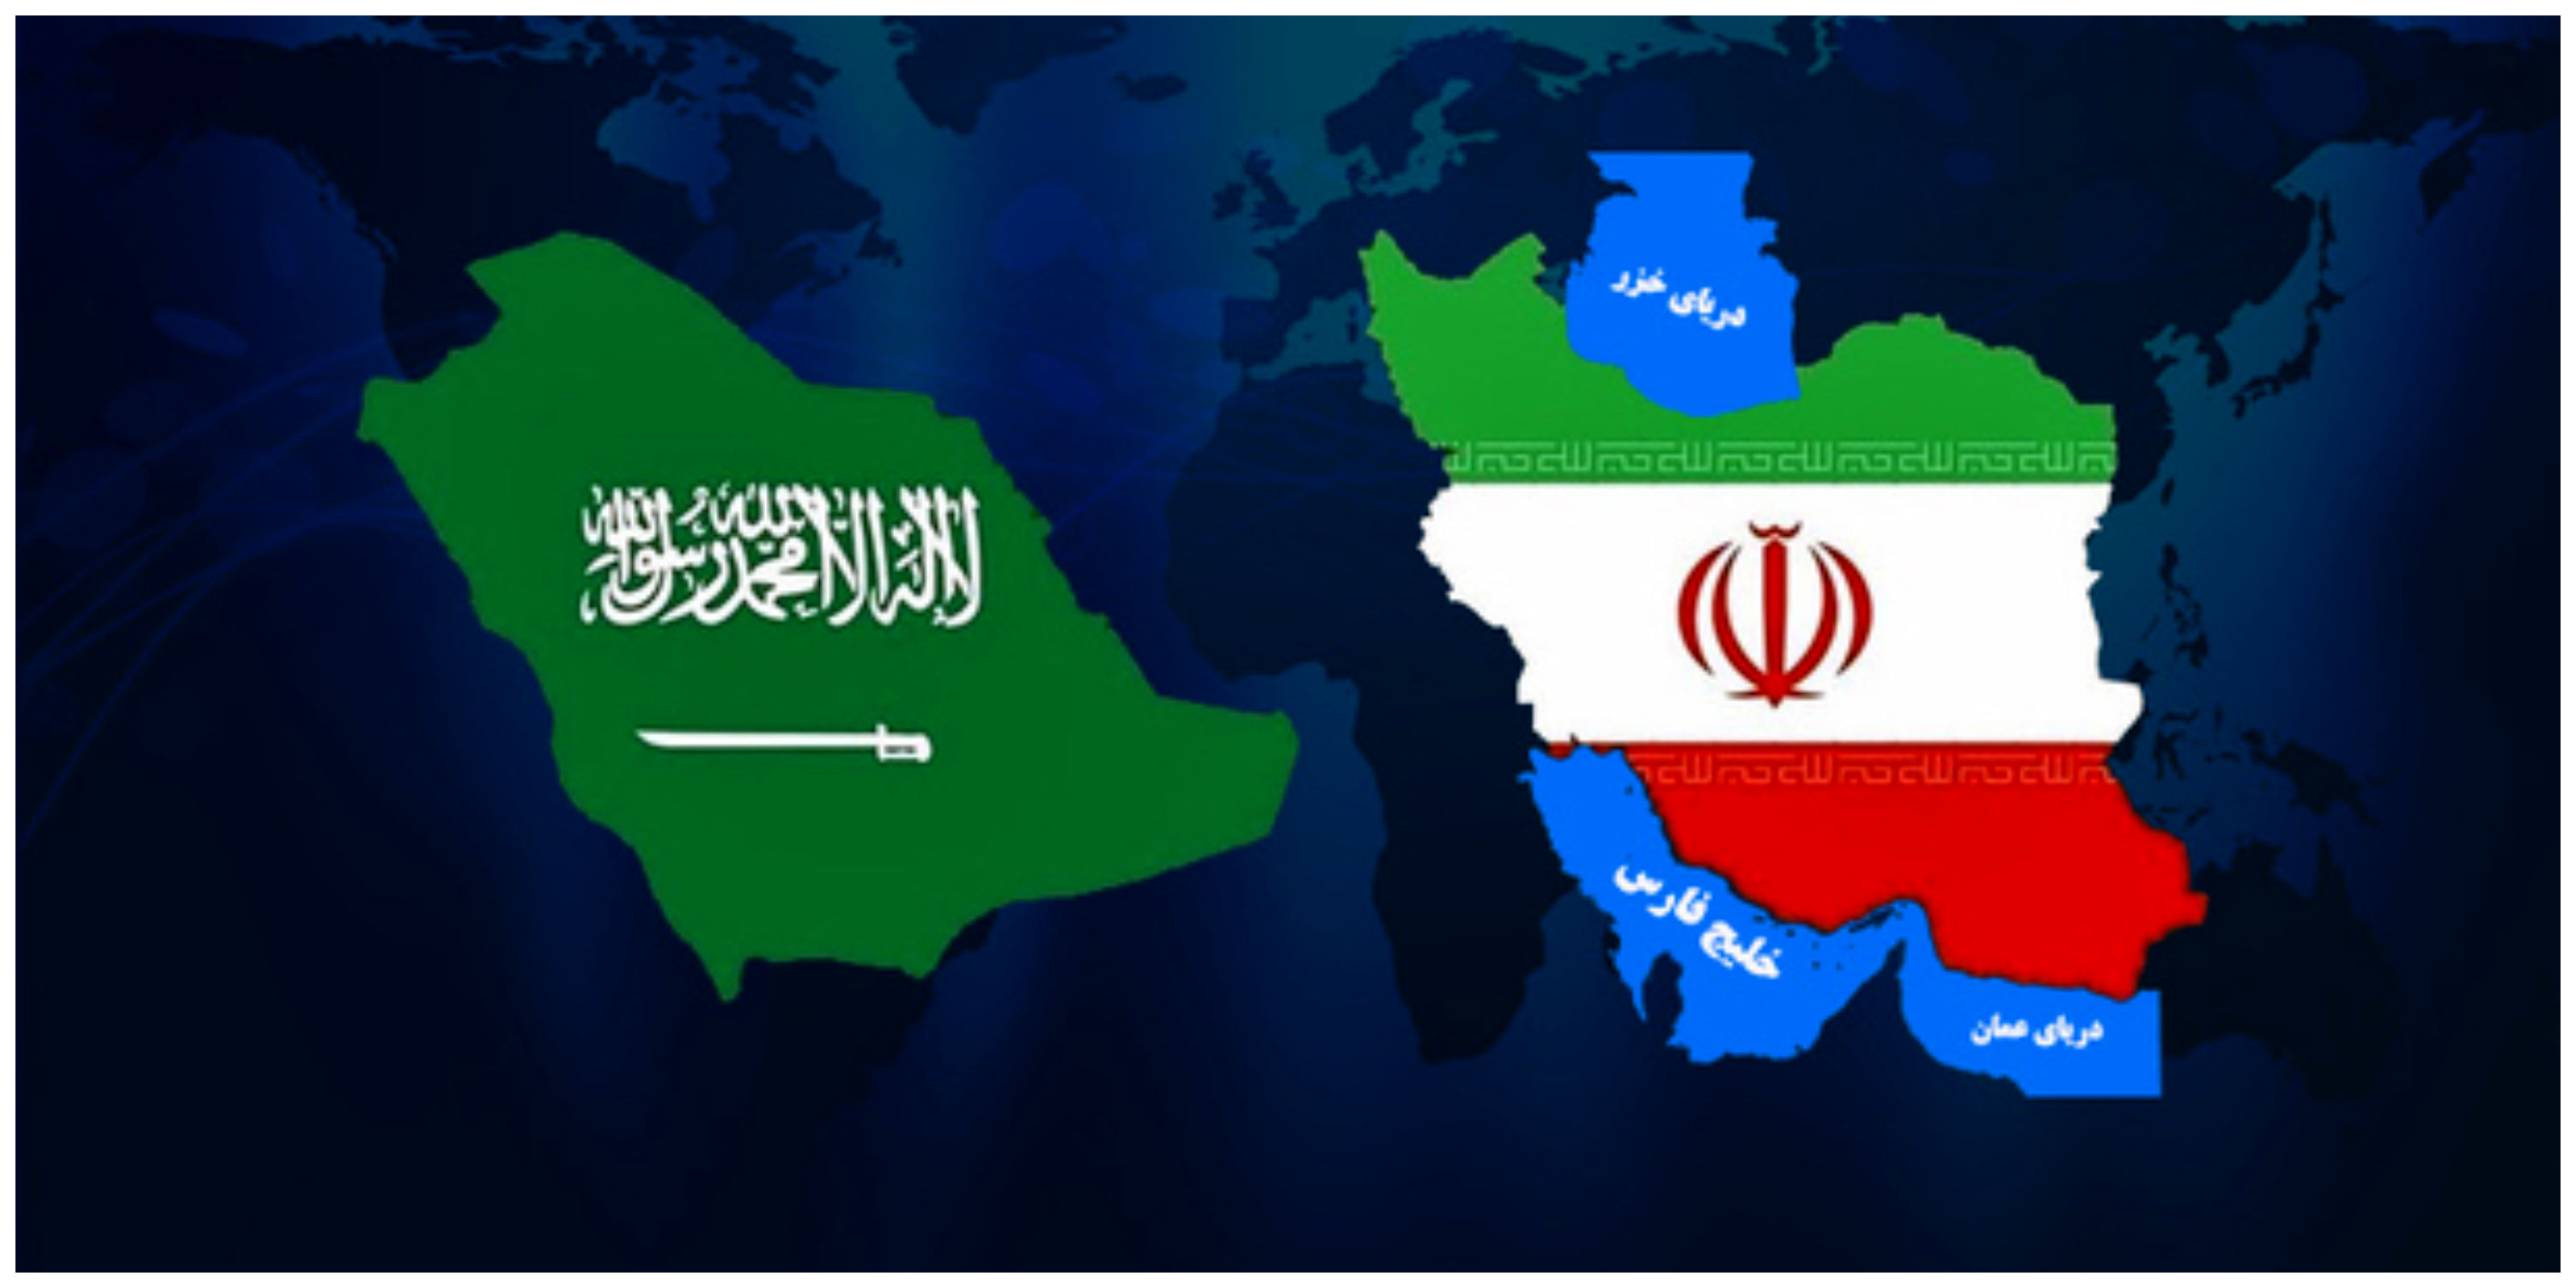 «واس» خبر داد: یک هیئت سعودی وارد ایران شد